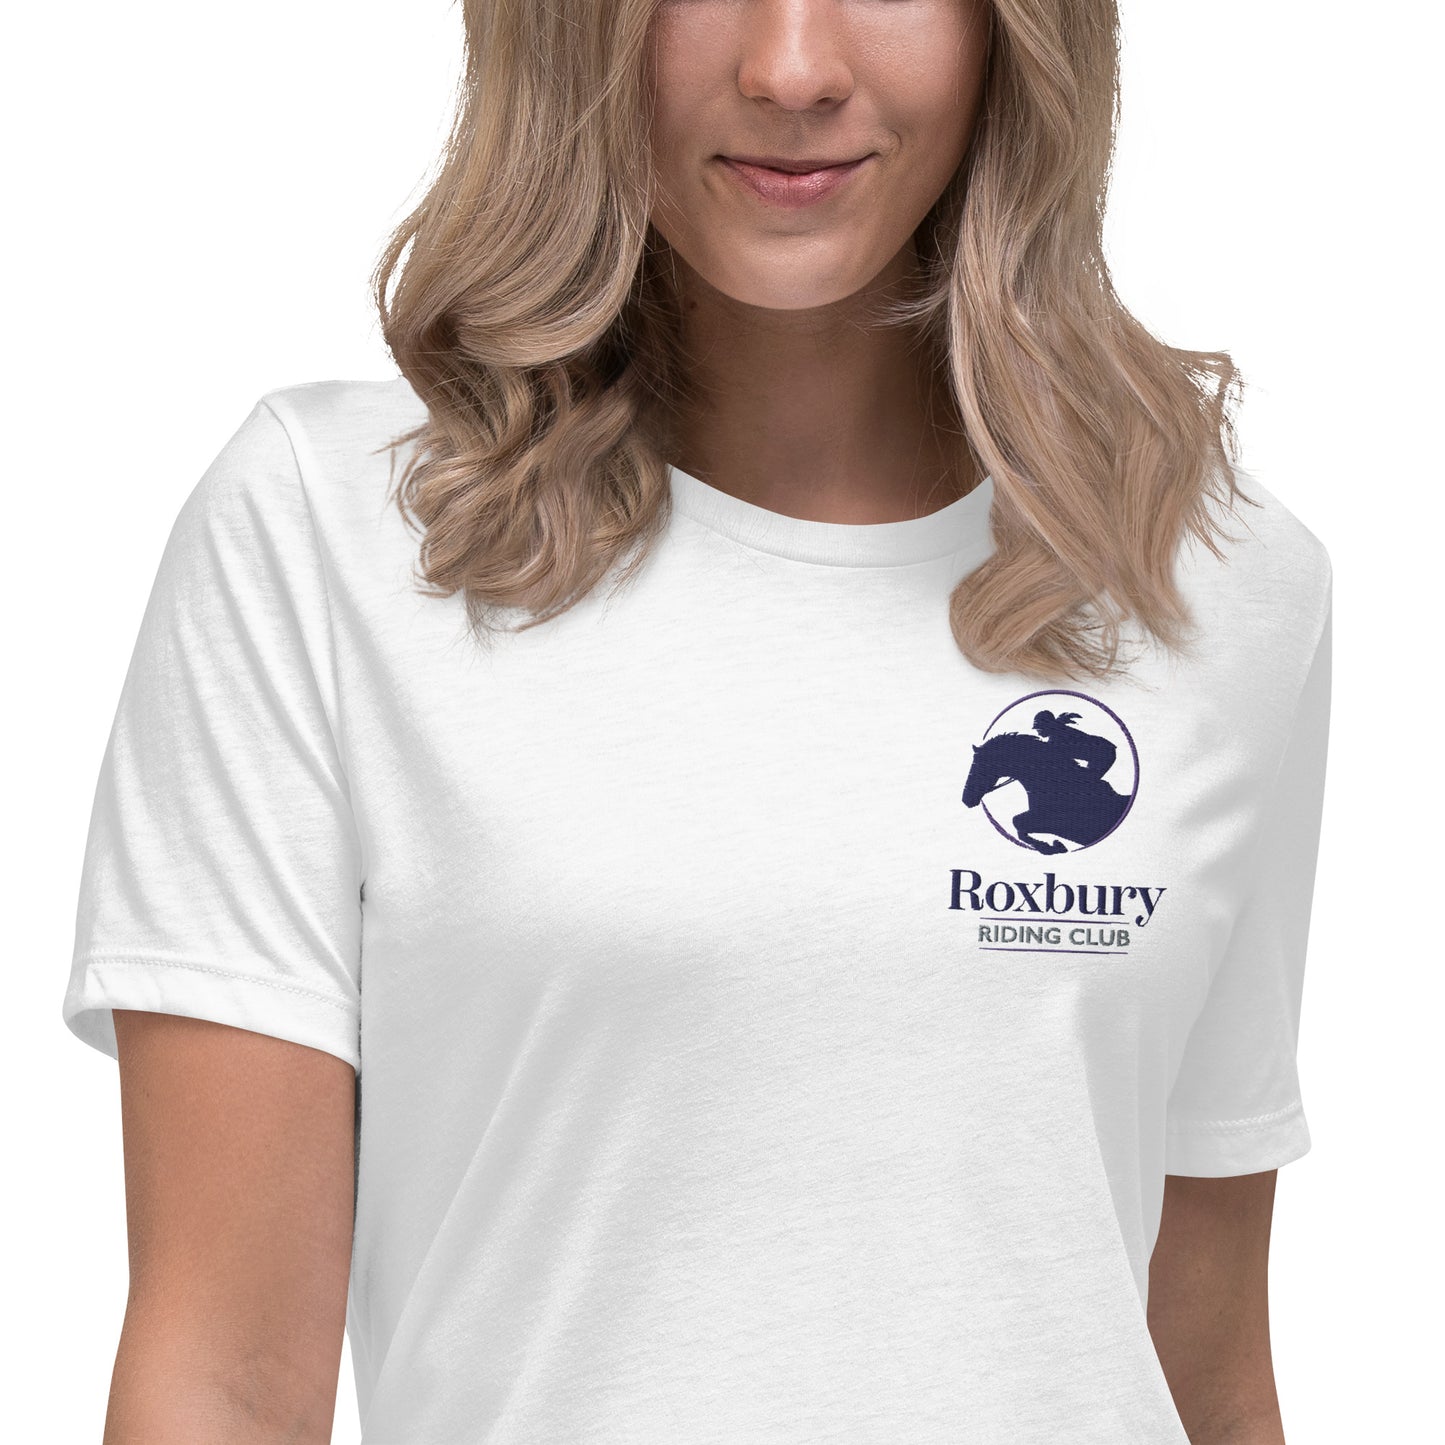 Roxbury Riding Club White T-Shirt